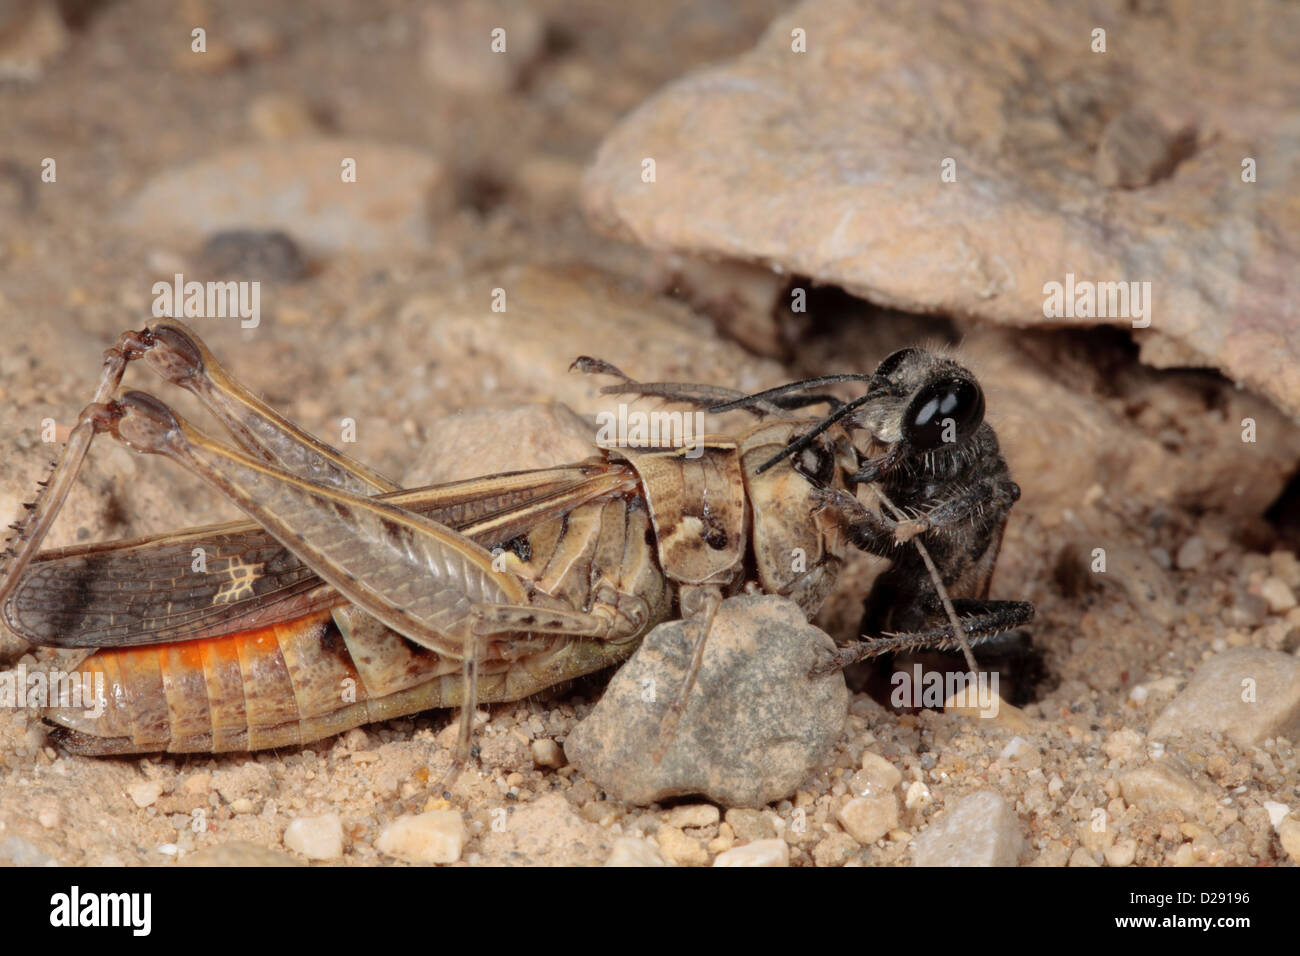 Femmina Digger Wasp (Prionyx kirbii) trascinando paralizzato grasshopper preda nella sua nidificazione burrow. Foto Stock